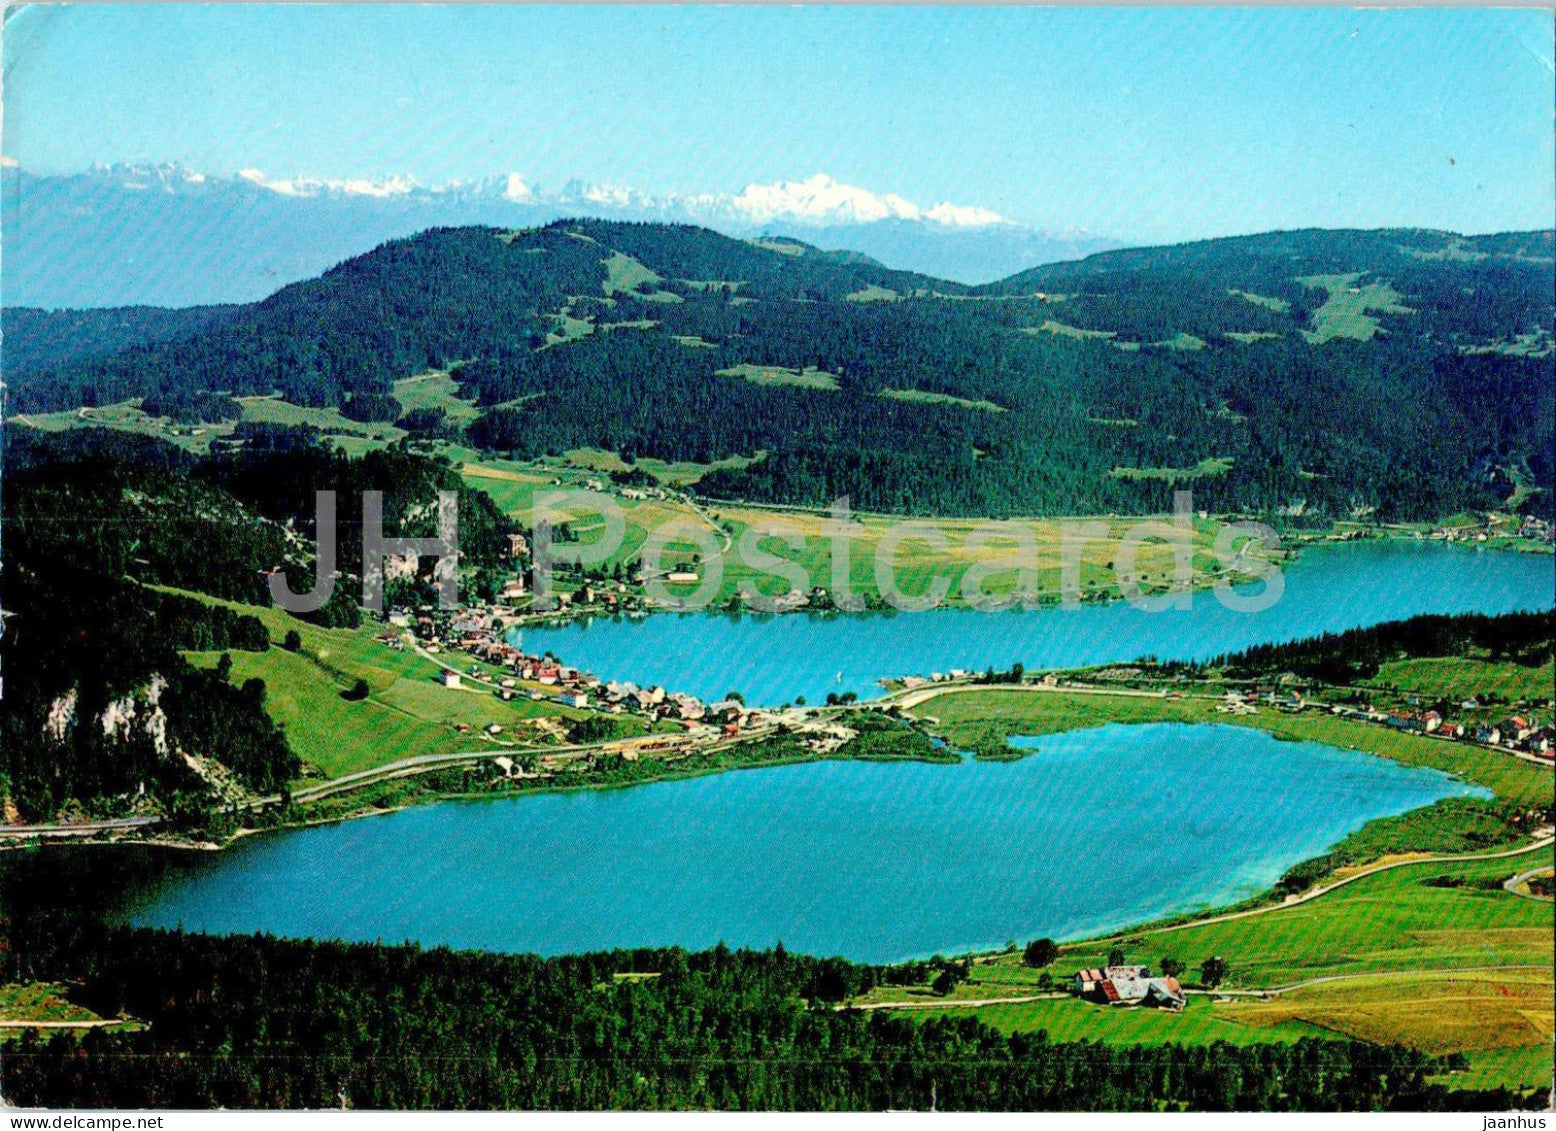 Le Pont - Lacs de Joux et Brenet - Mont Blanc et Dents du Midi - 12984 - 1971 - Switzerland - used - JH Postcards